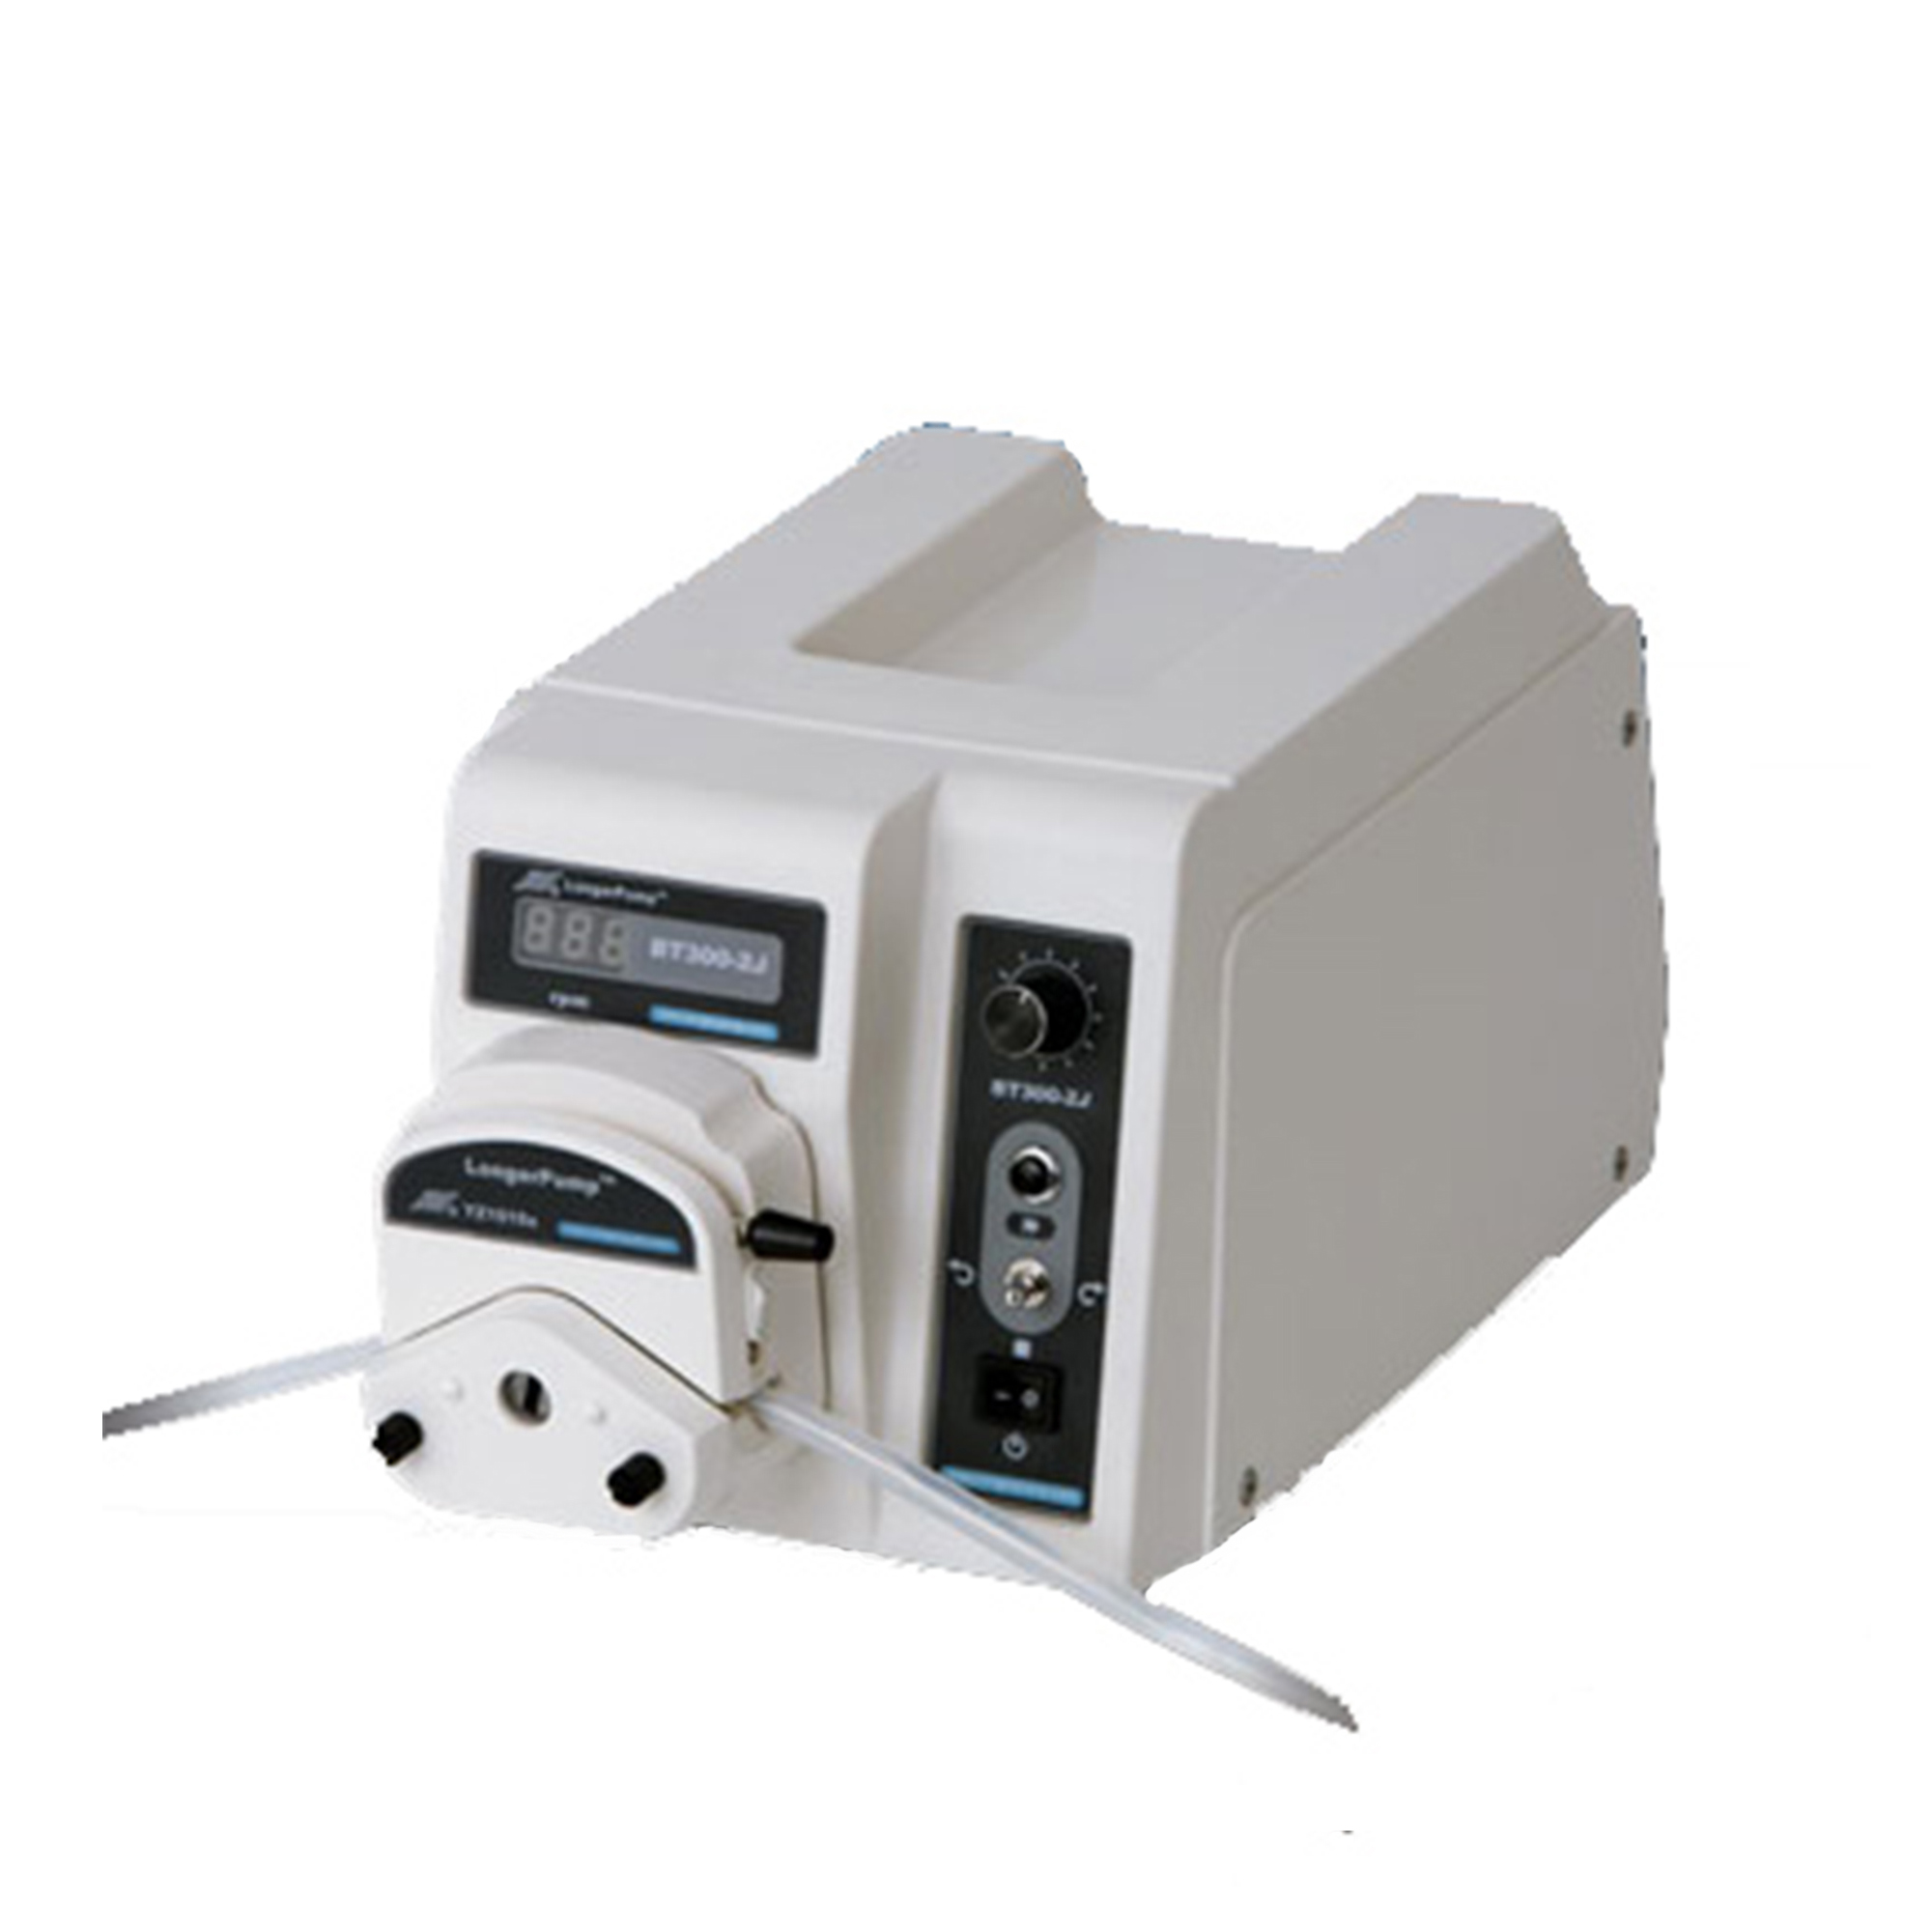 Nade Pump Medium Flow Rate Peristaltic Pump BT300-2J